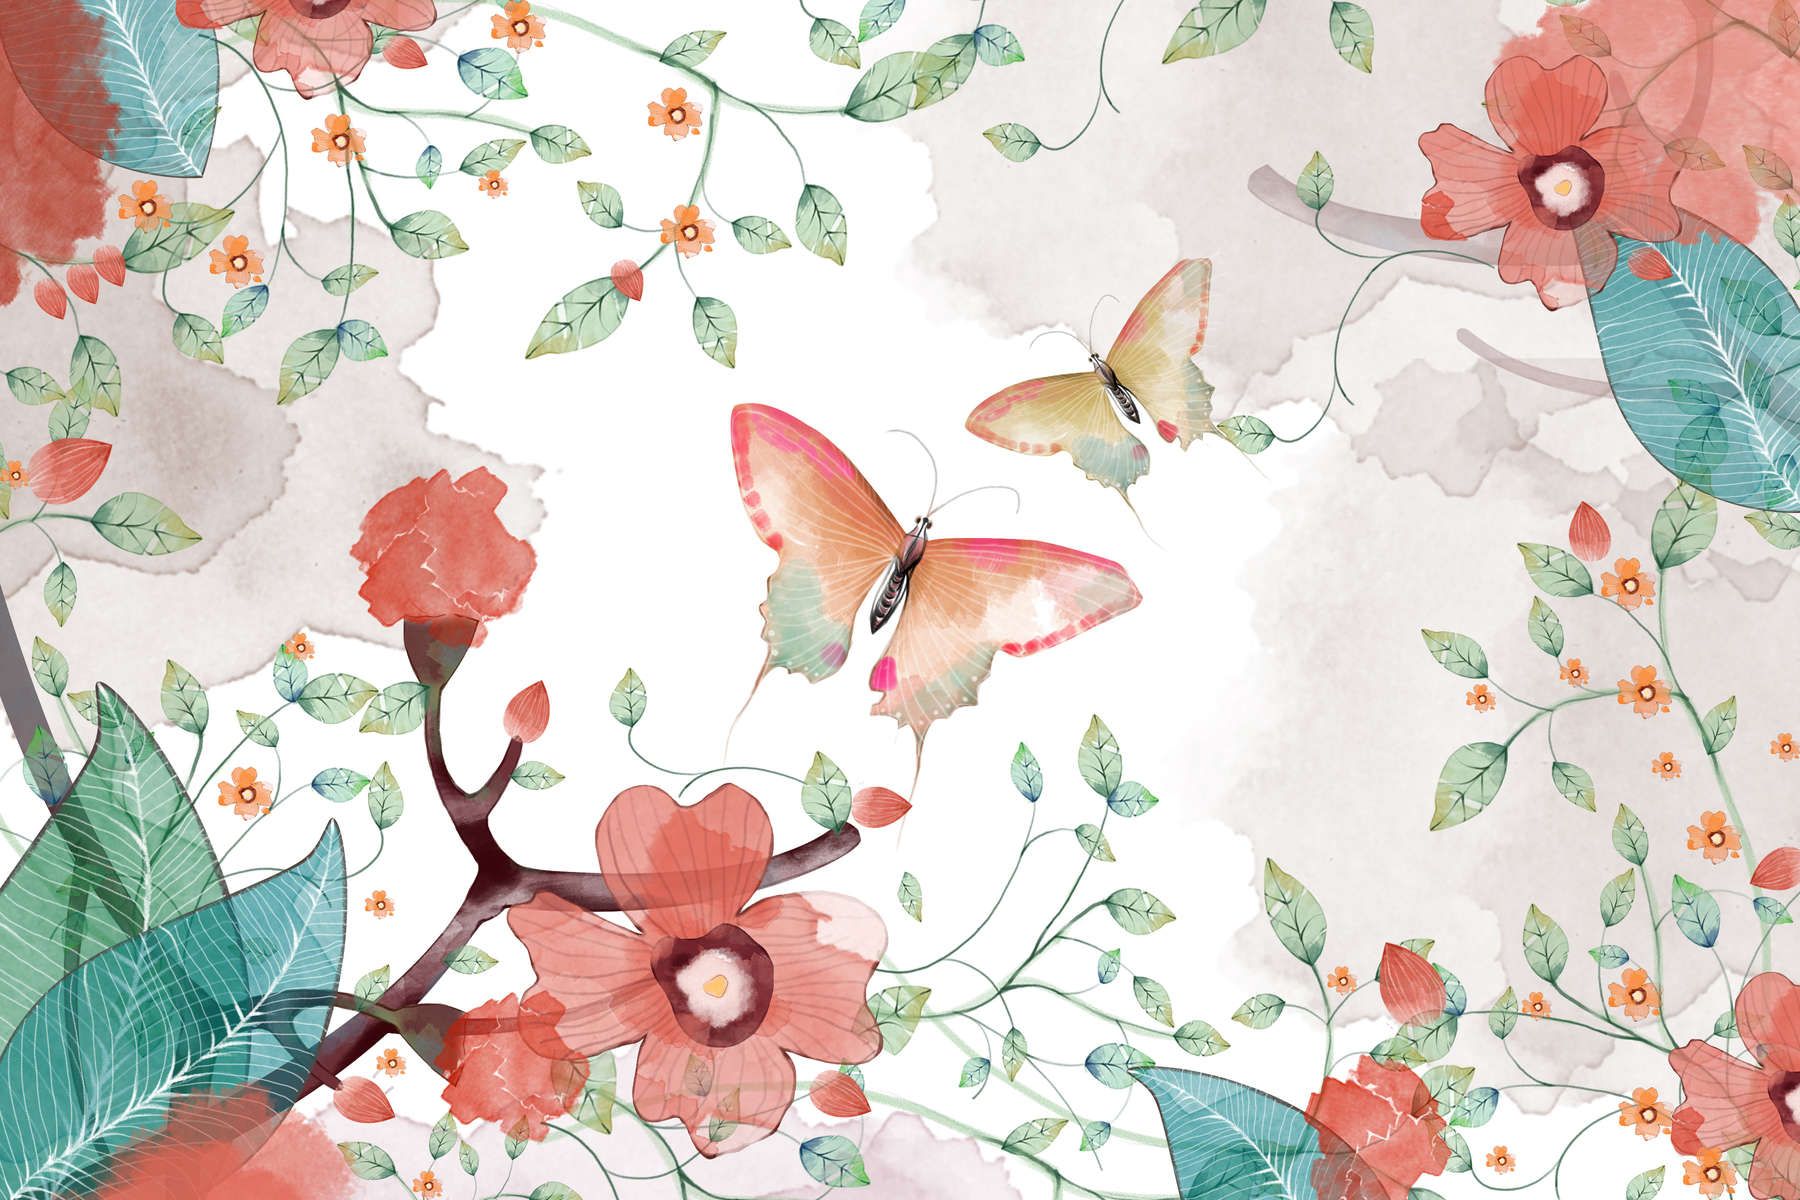             Fototapete floral mit Blättern und Schmetterlingen – Glattes & leicht glänzendes Vlies
        